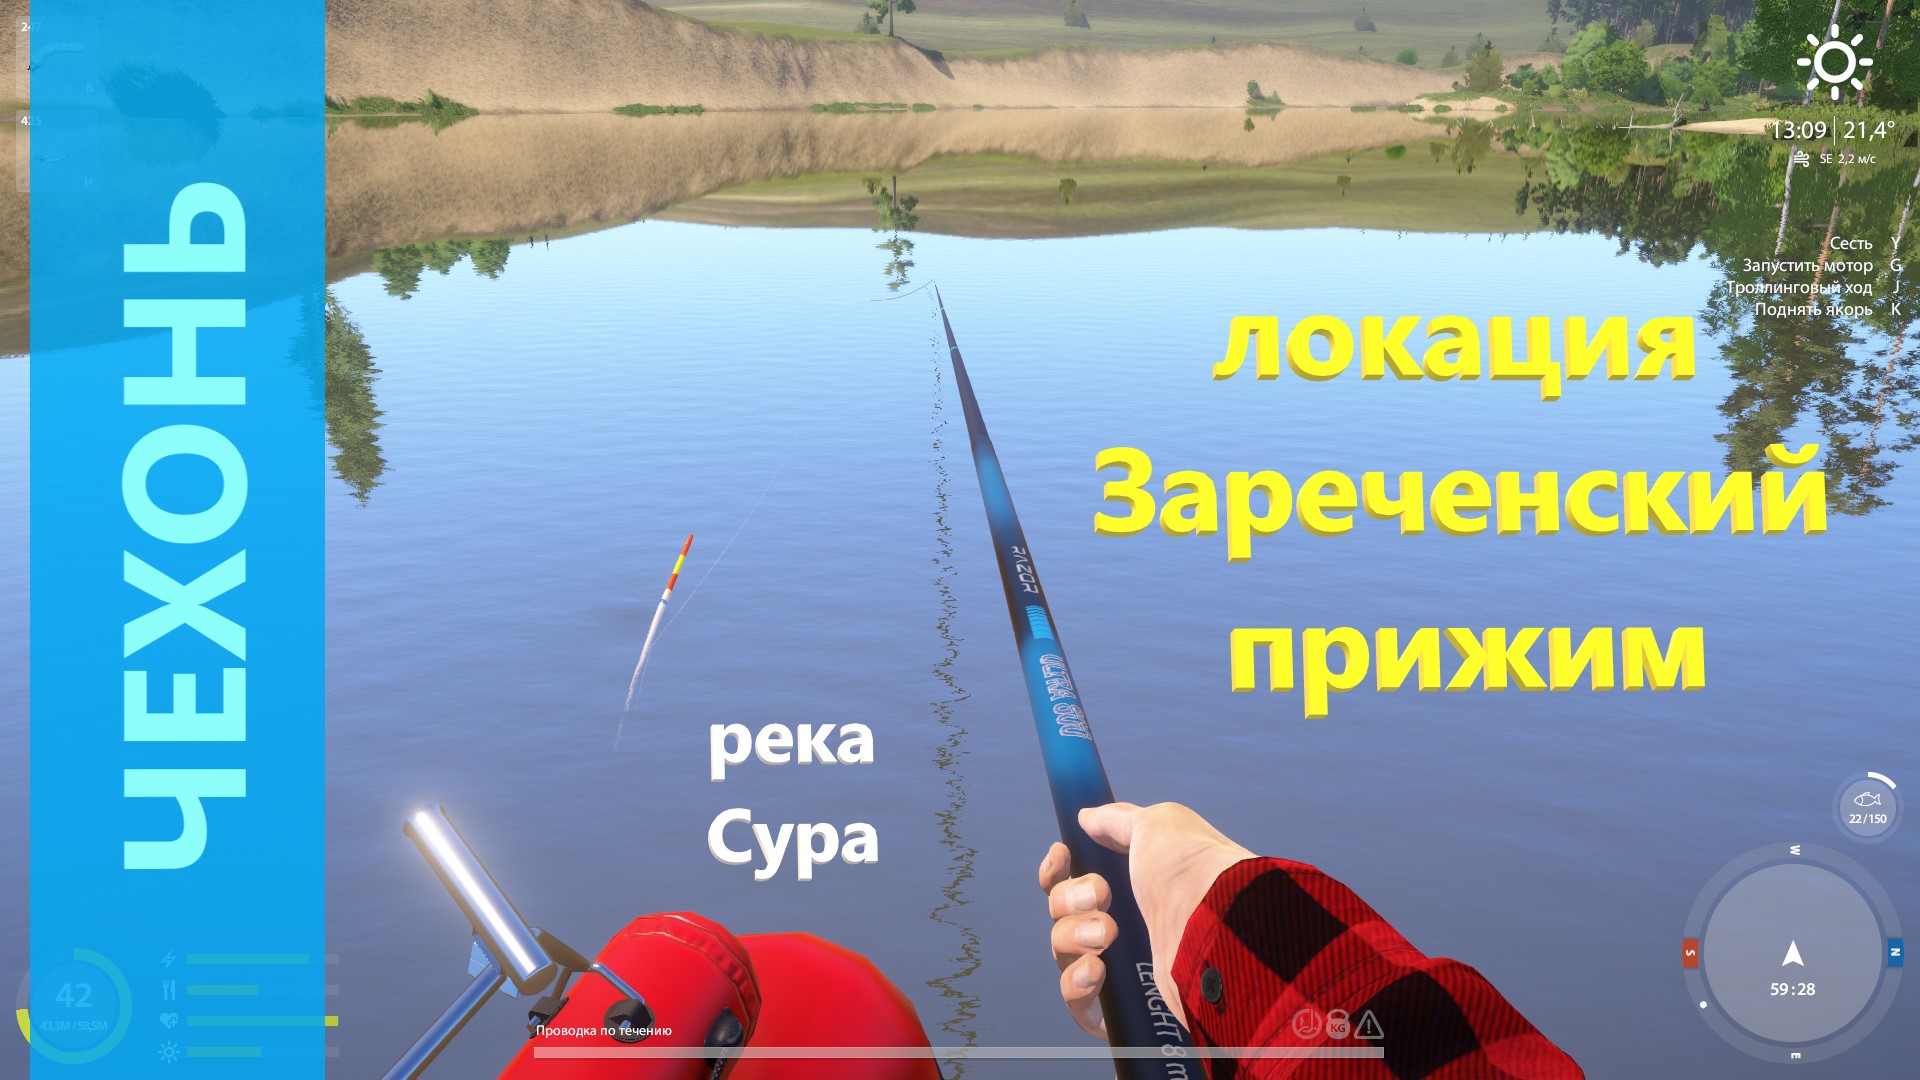 Русская рыбалка 4 - река Сура - Чехонь с берега и с лодки